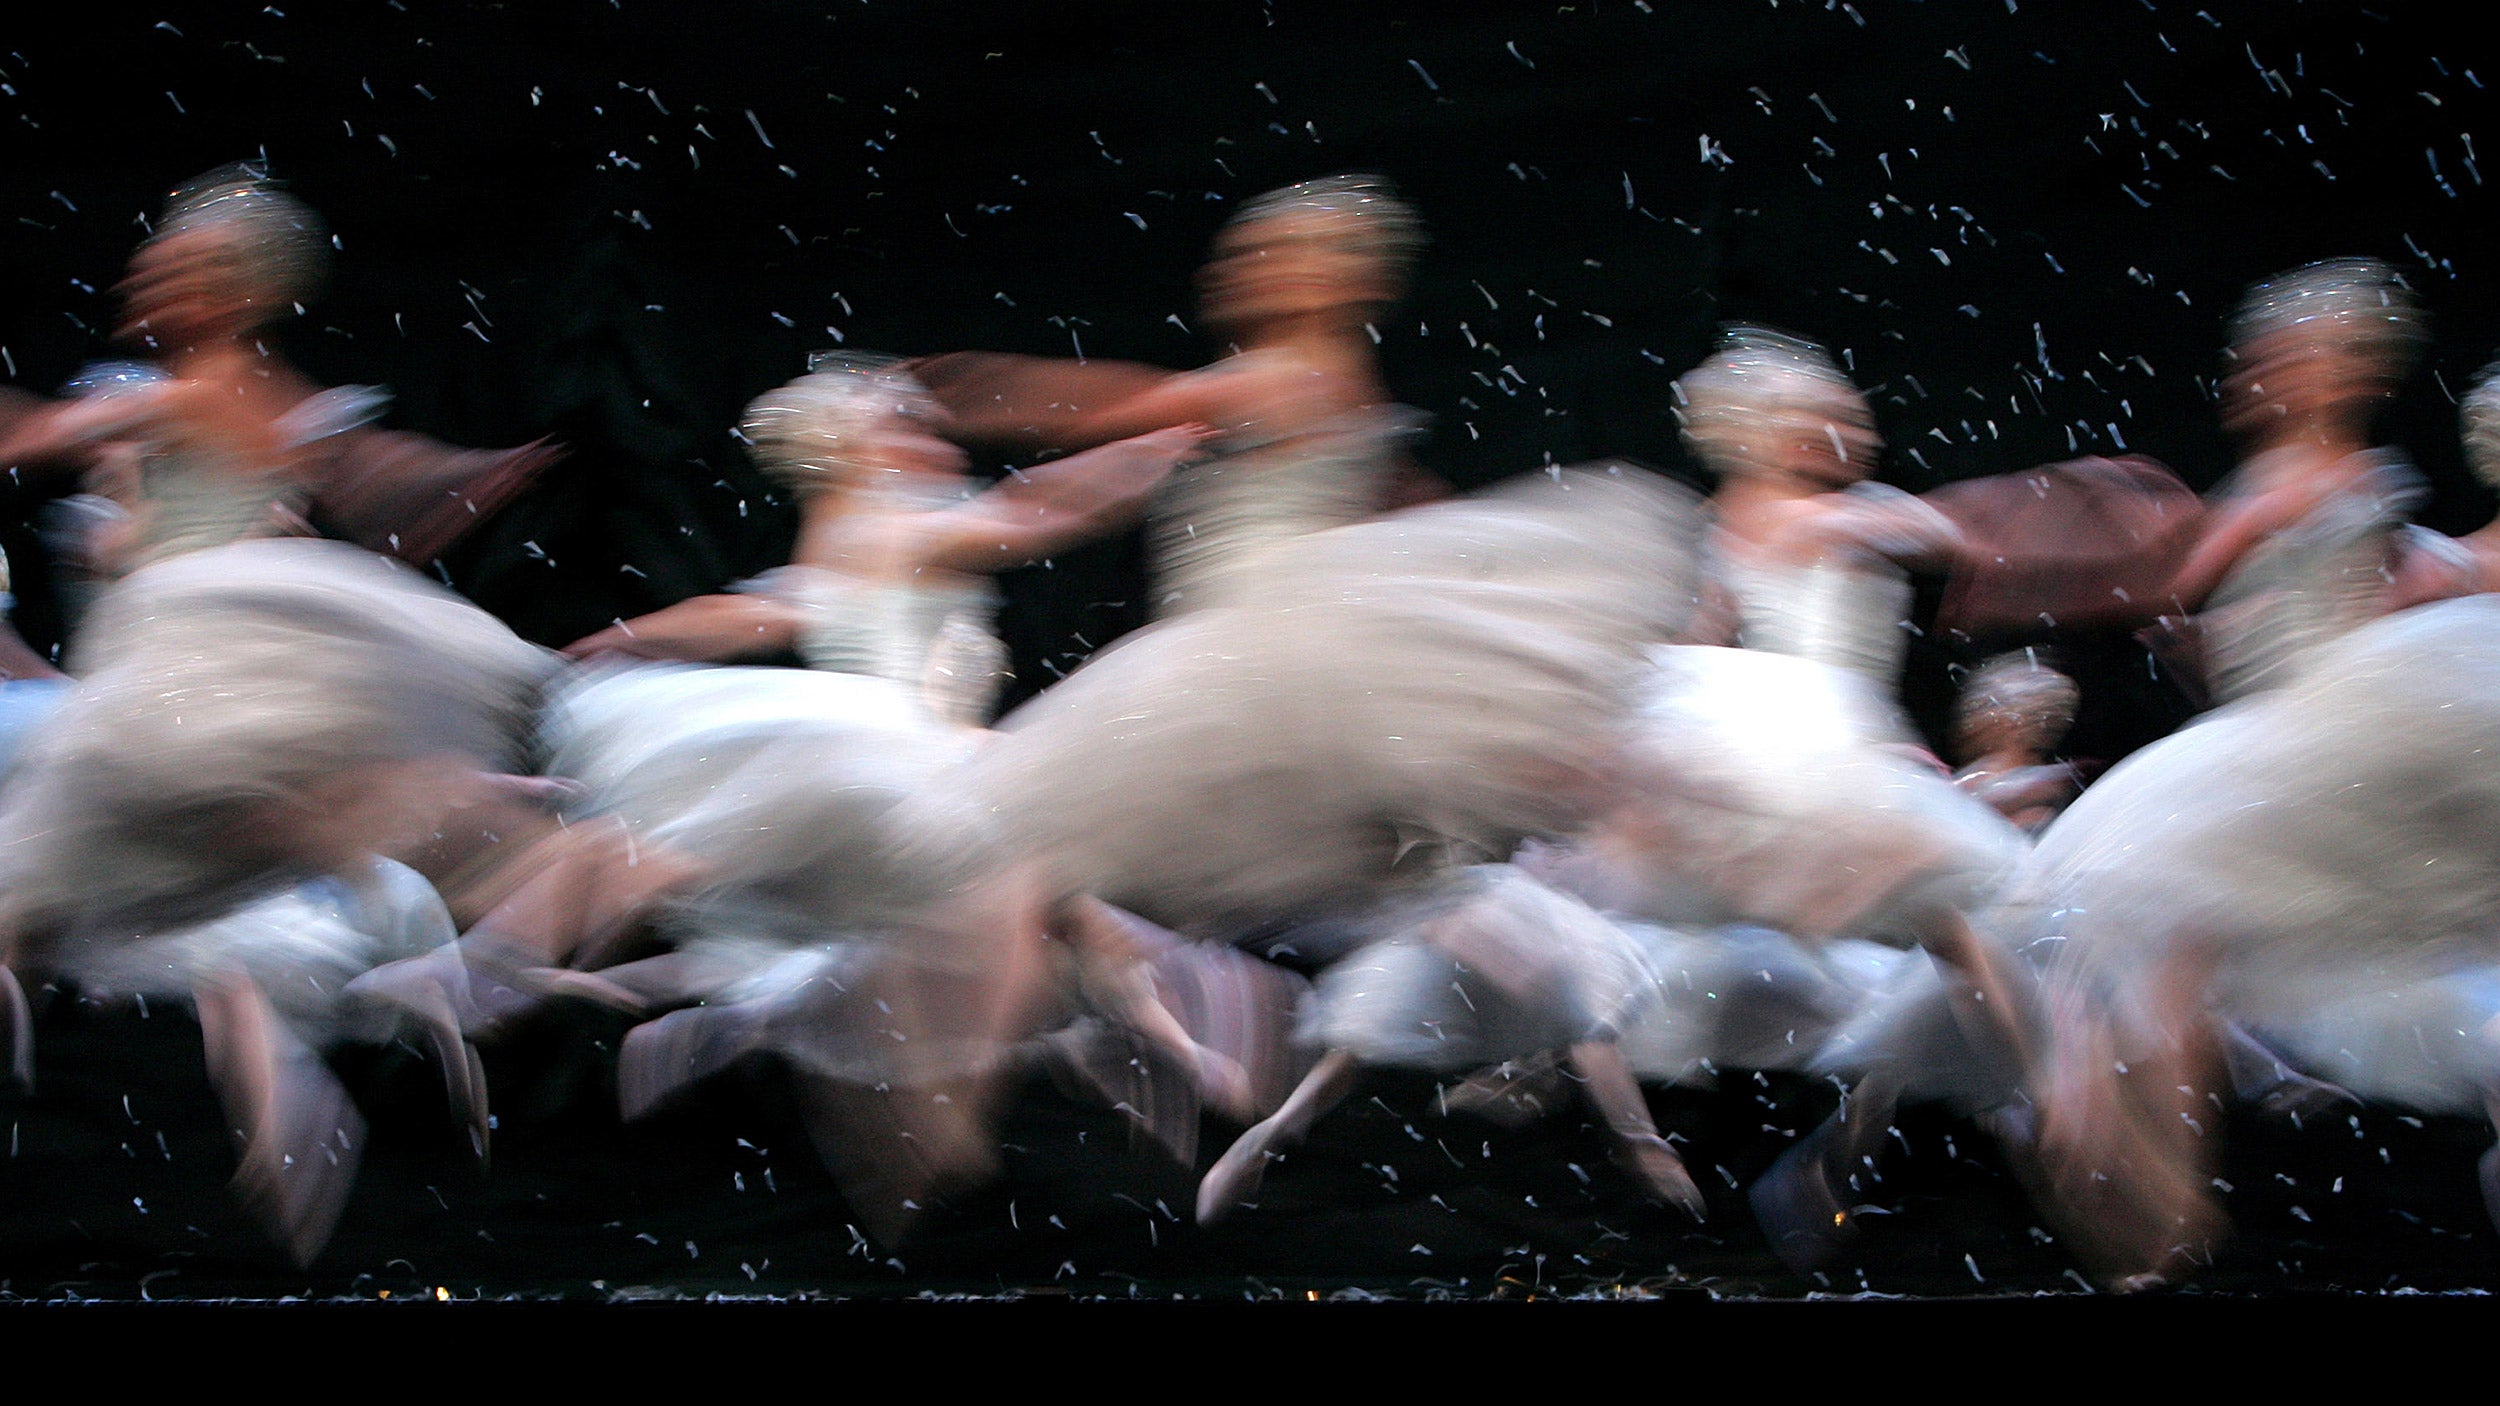 Ballerinas dance as snowflakes in "Nutcracker Ballet."